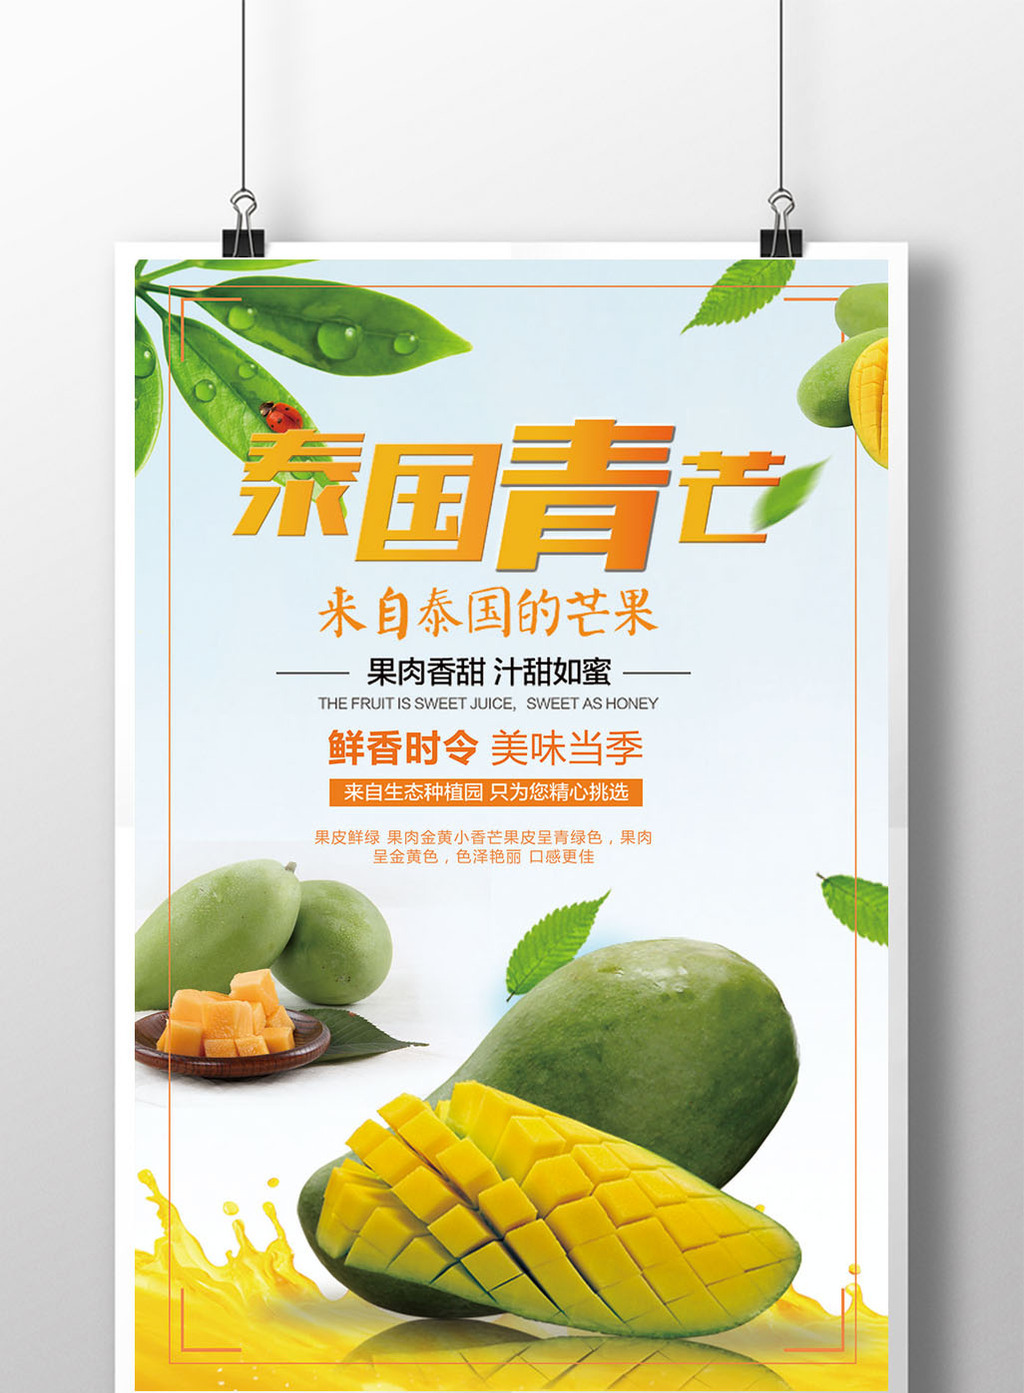 创意水果芒果宣传海报模板免费下载 _广告设计图片设计素材_【包图网